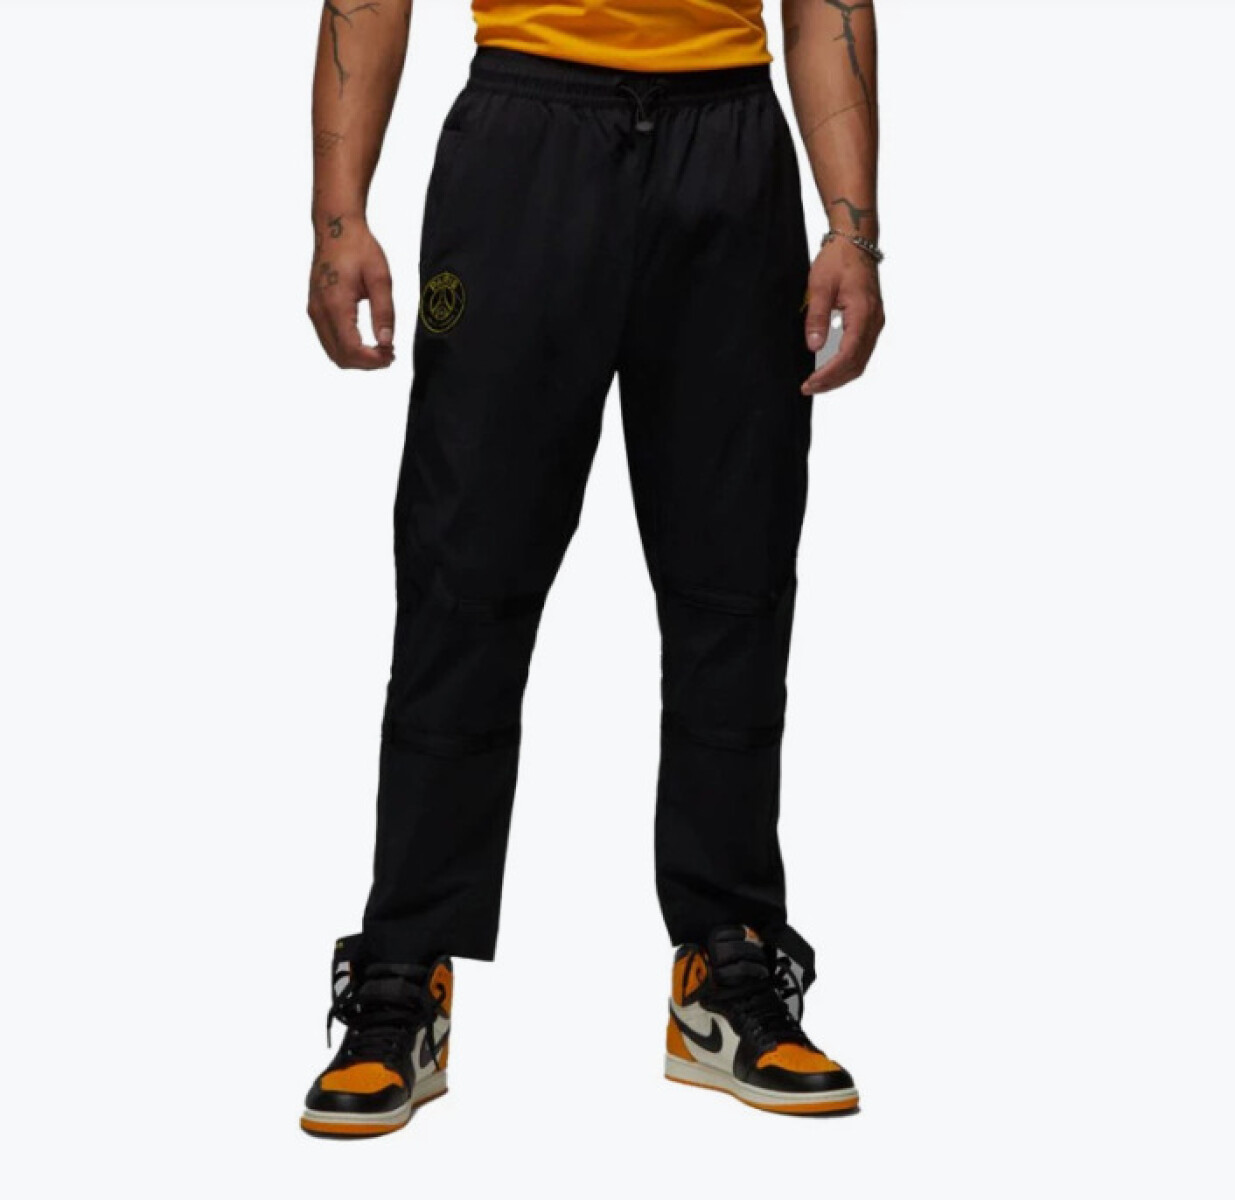 Pantalon Nike Jordan Hombre PSG Wvn Black/Tour - S/C 